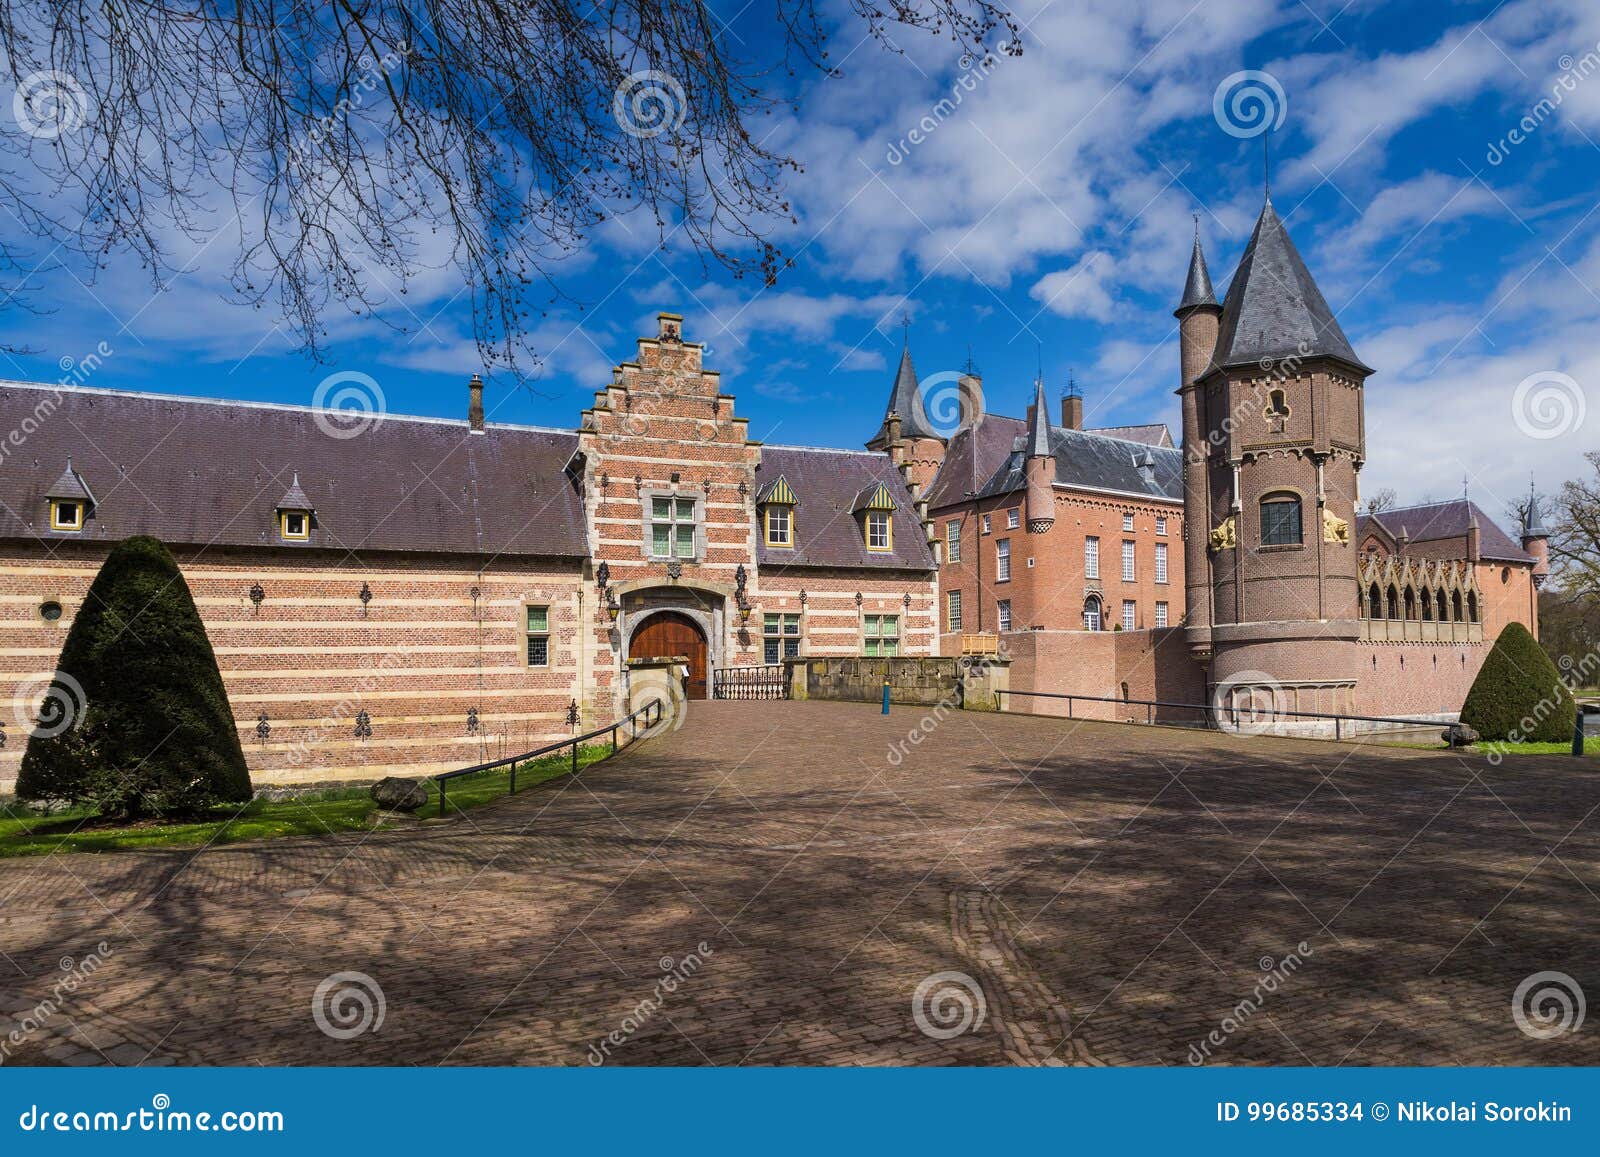 castle kasteel heeswijk in netherlands